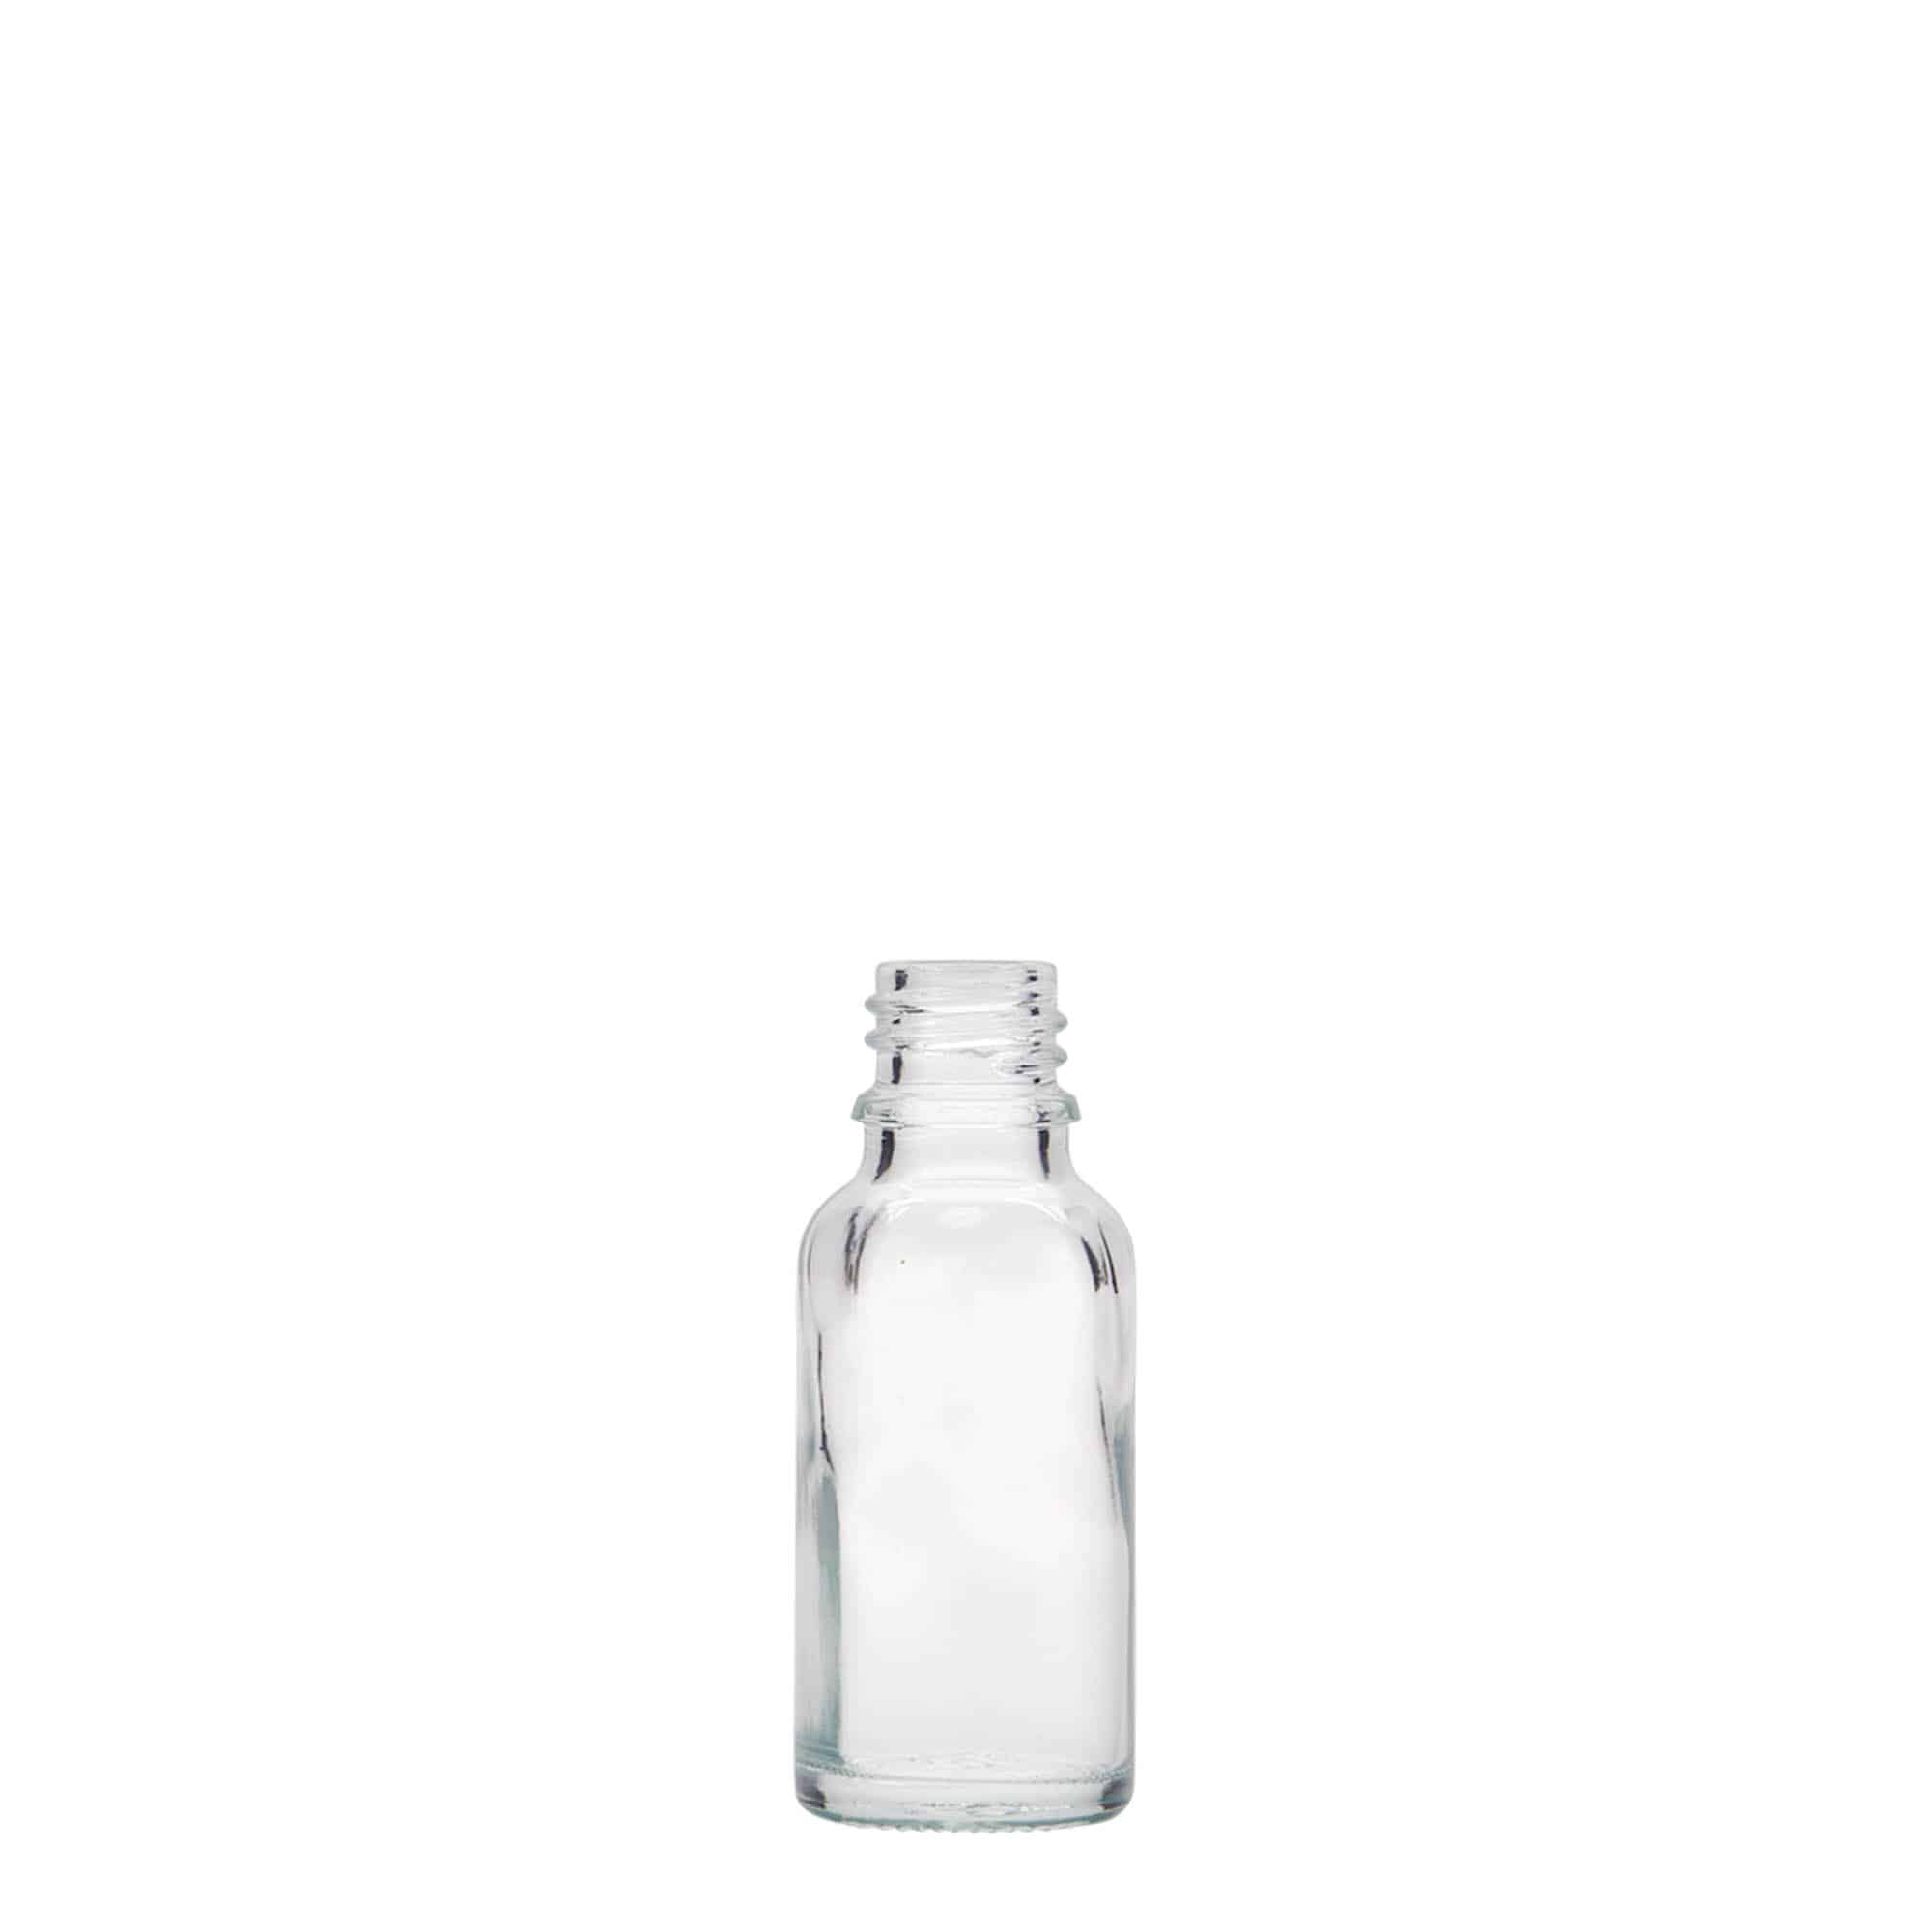 20 ml Flacone farmaceutico, vetro, imboccatura: DIN 18